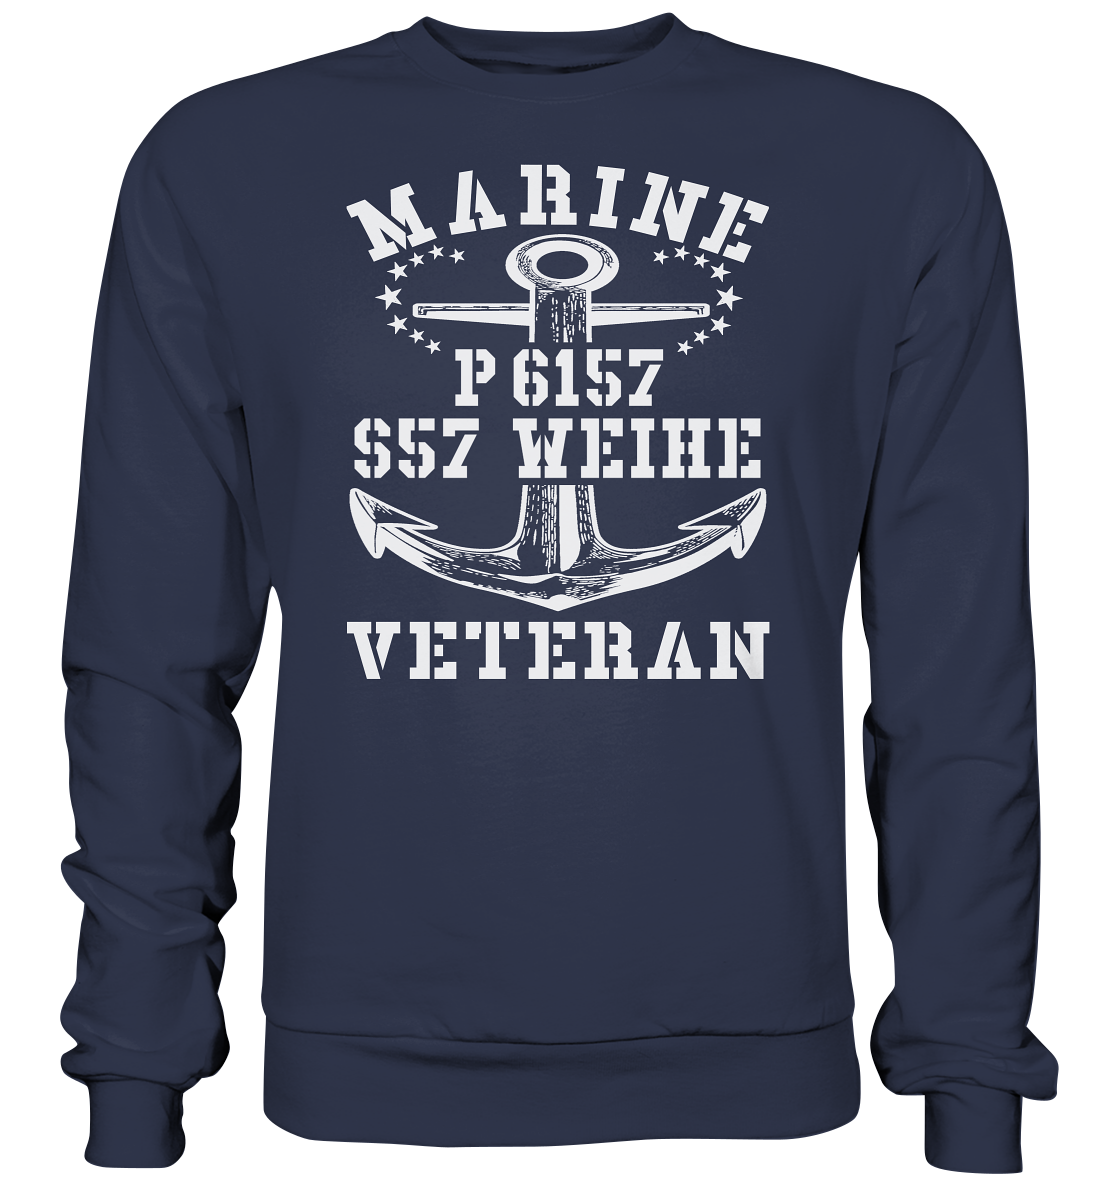 P6157 S57 WEIHE Marine Veteran - Premium Sweatshirt